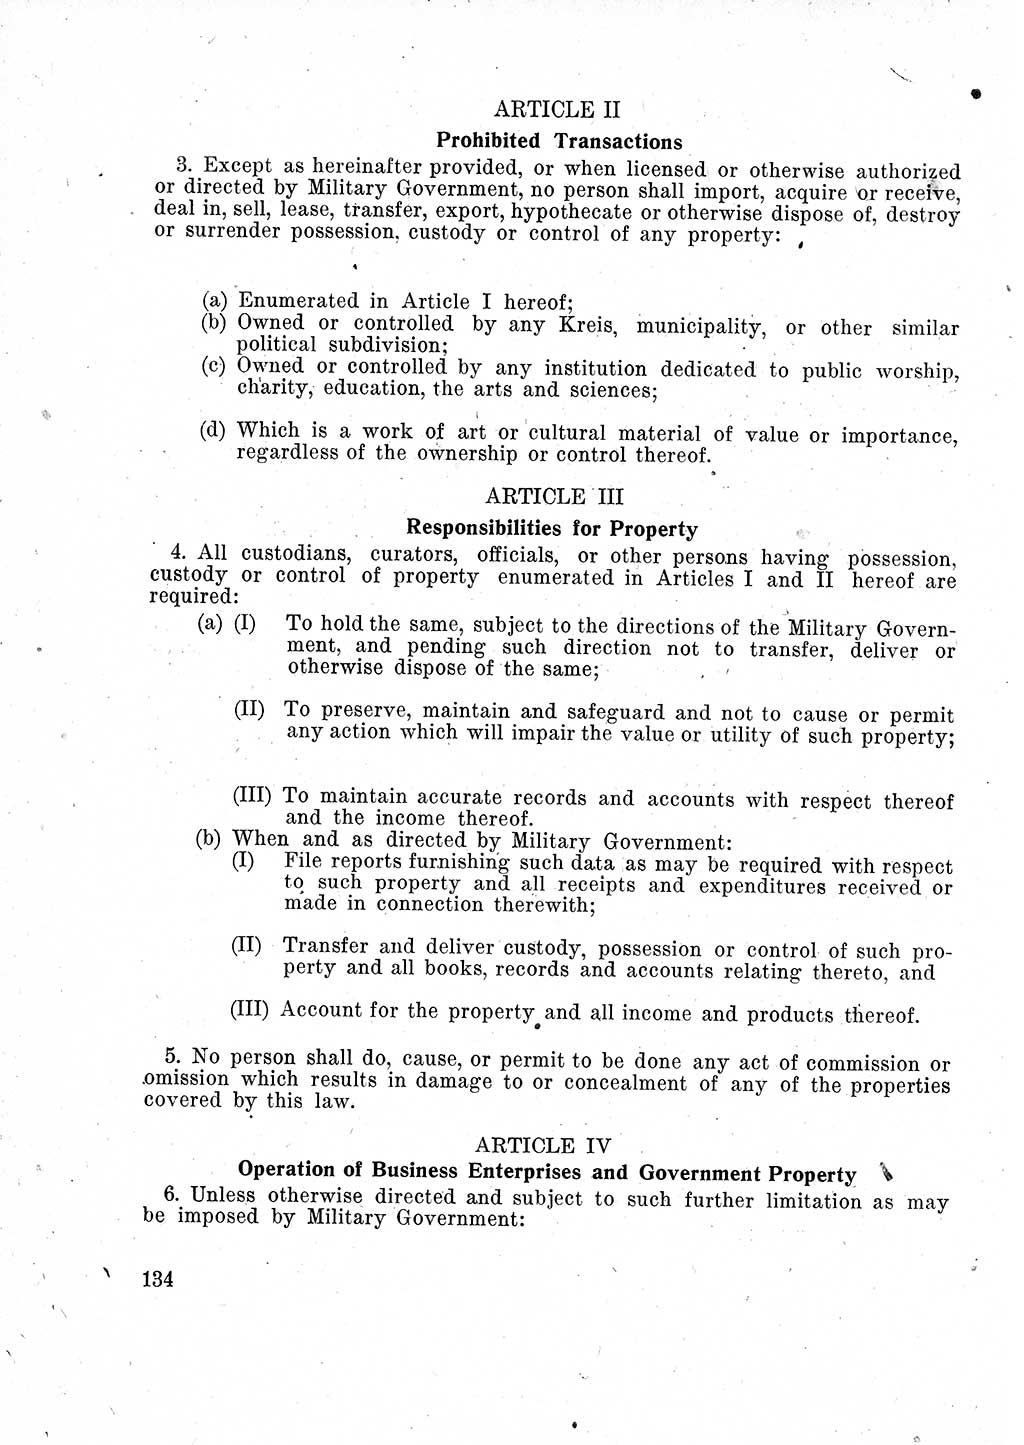 Das Recht der Besatzungsmacht (Deutschland), Proklamationen, Deklerationen, Verordnungen, Gesetze und Bekanntmachungen 1947, Seite 134 (R. Bes. Dtl. 1947, S. 134)